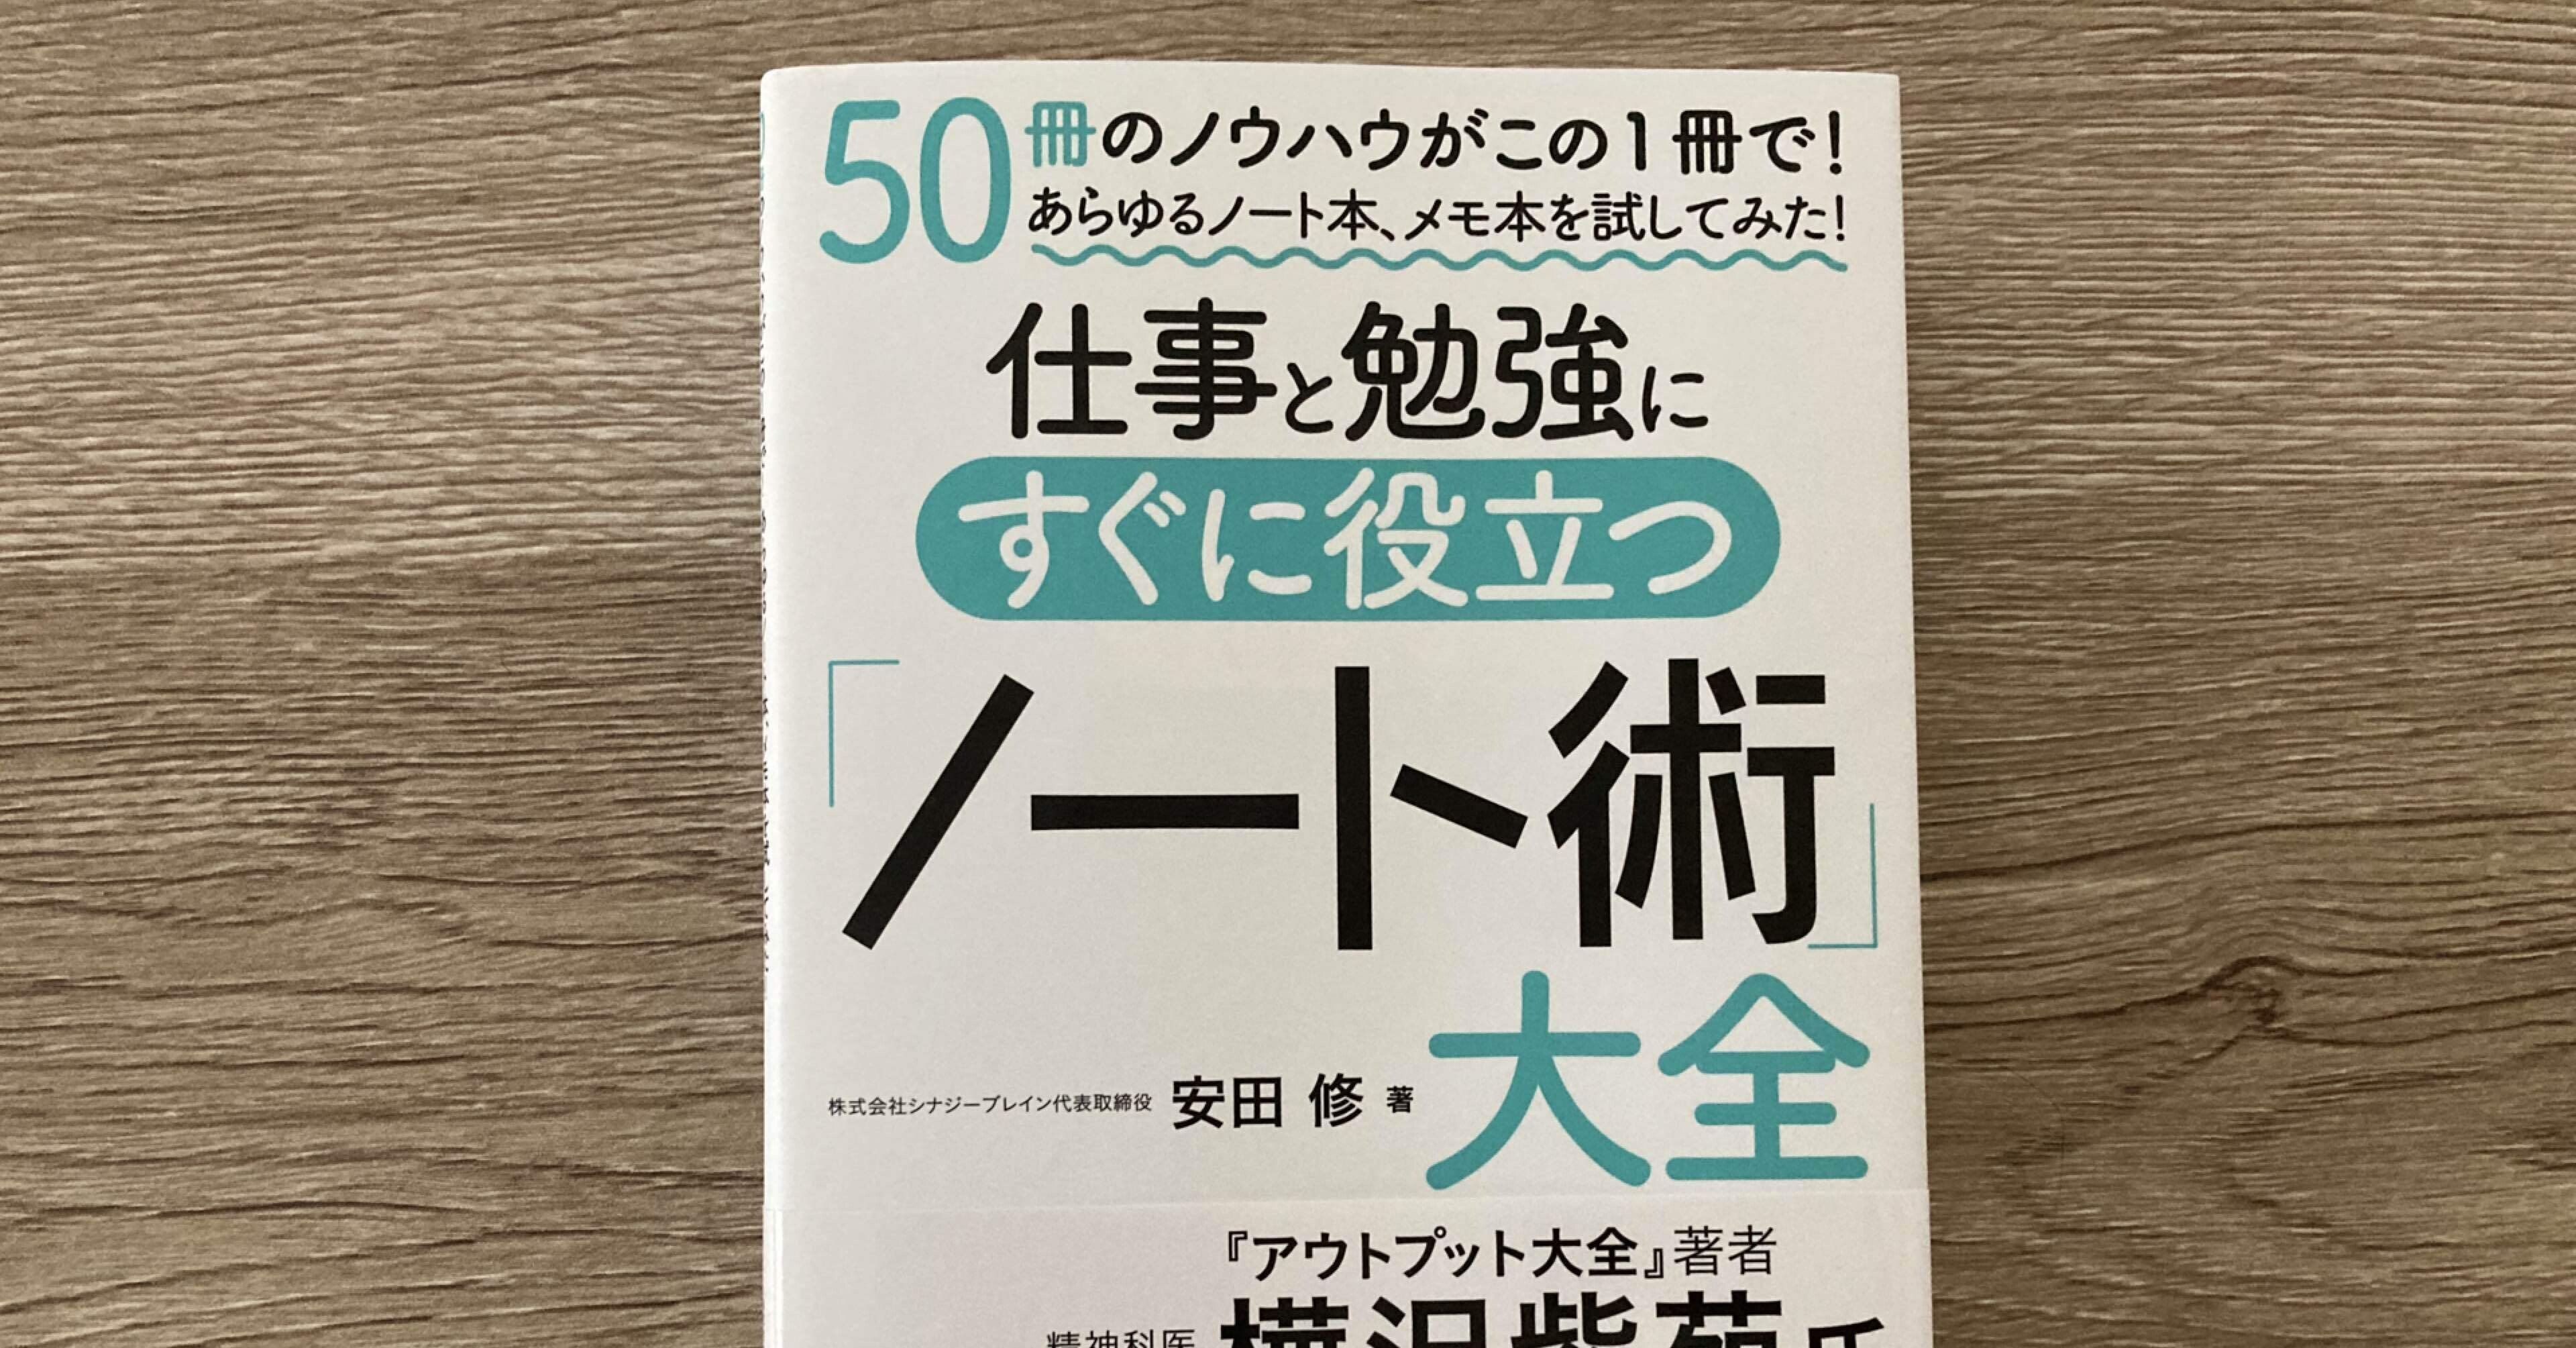 安田修「50冊のノウハウがこの1冊で！あらゆるノート本、メモ本を試し